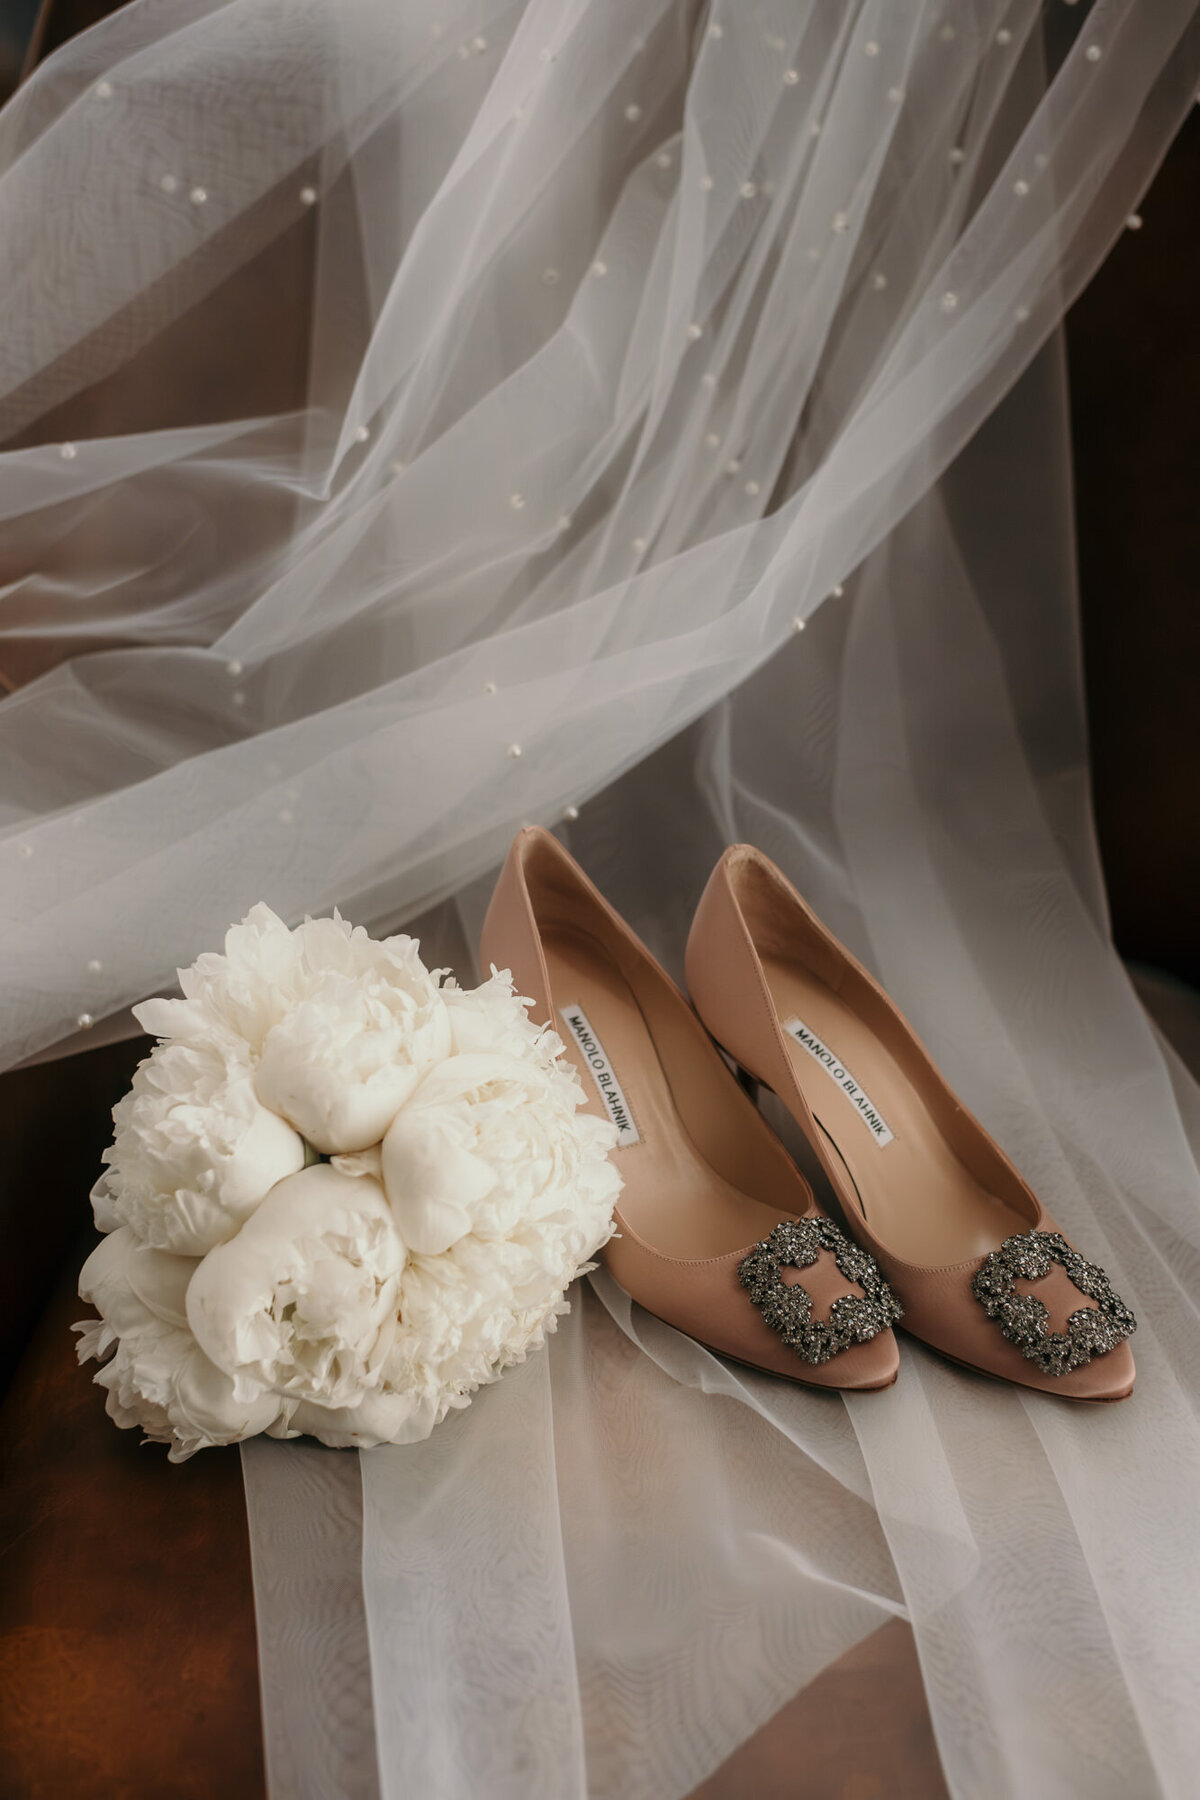 Brautstrauß, Brautschuhe sowie Schleier liegen schön drapiert bereit für den großen Tag.